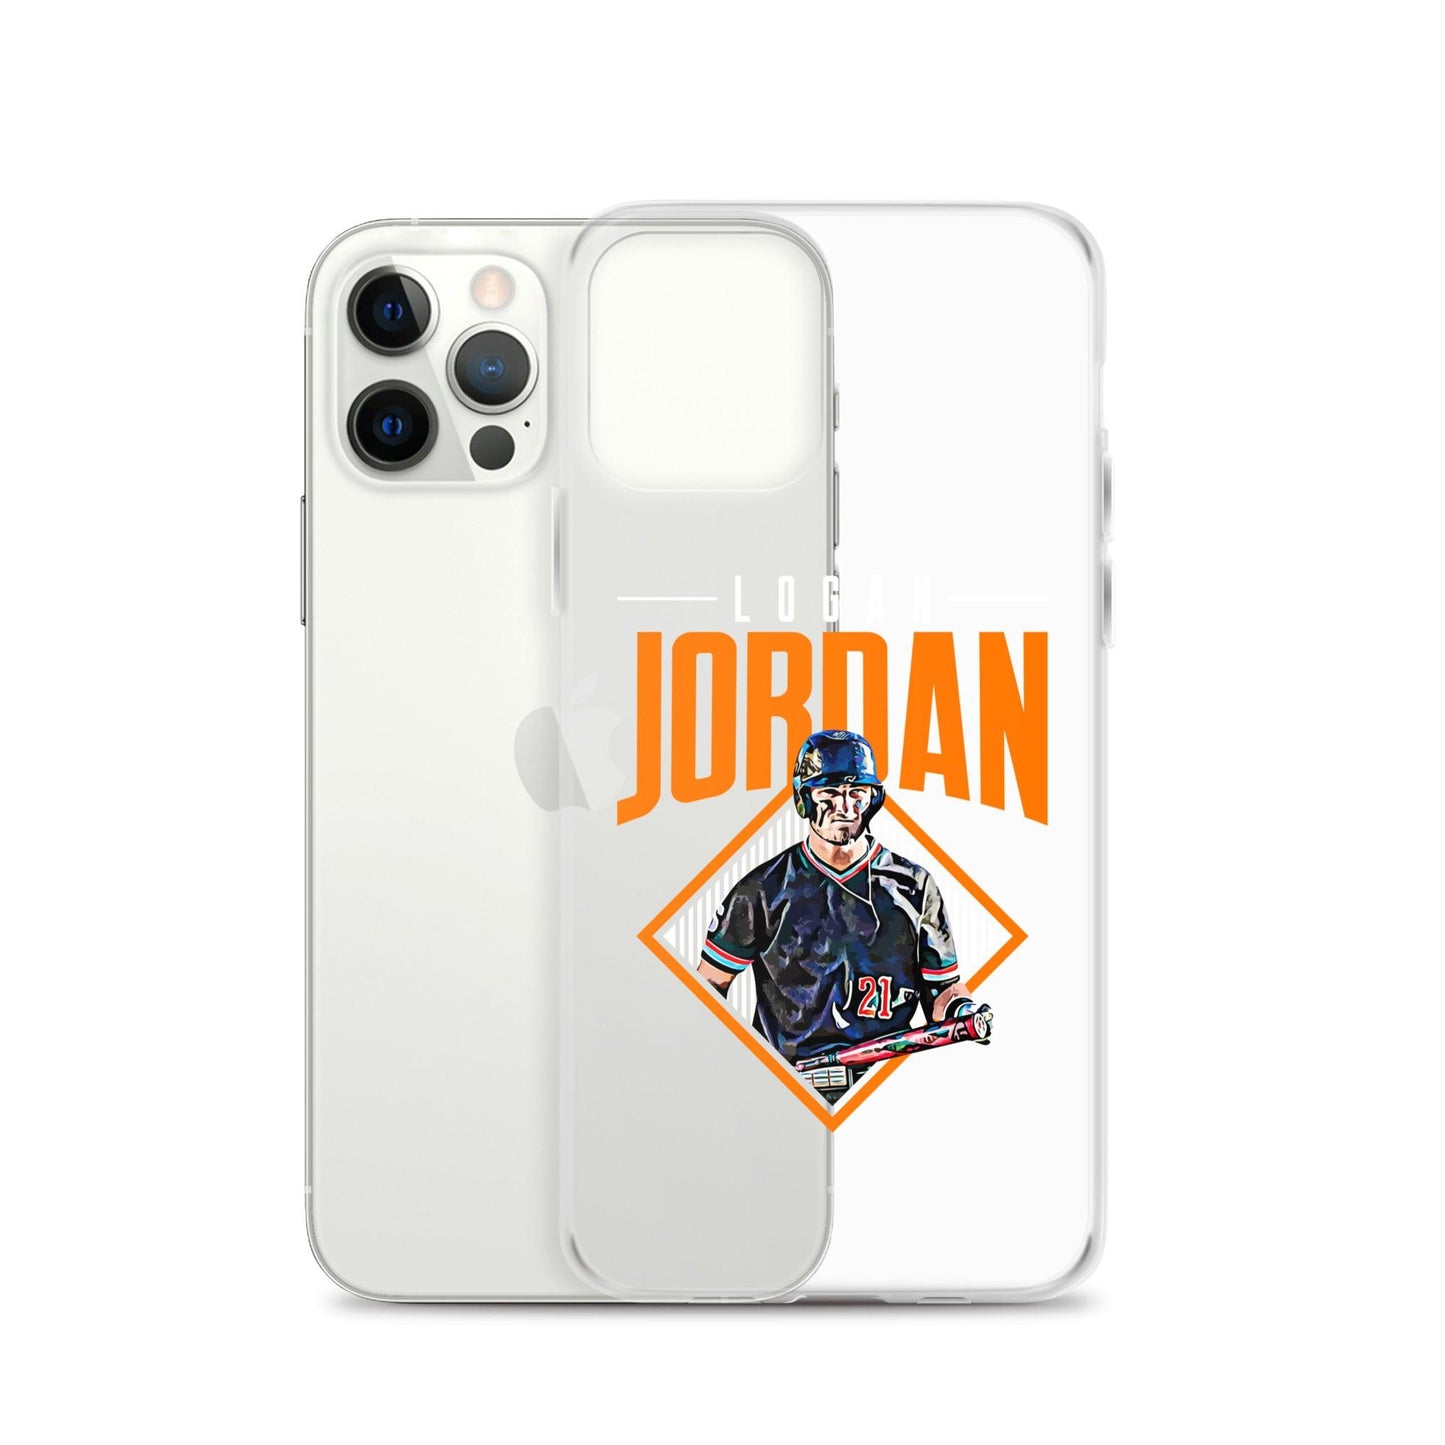 Logan Jordan "Grand Slam" iPhone Case - Fan Arch